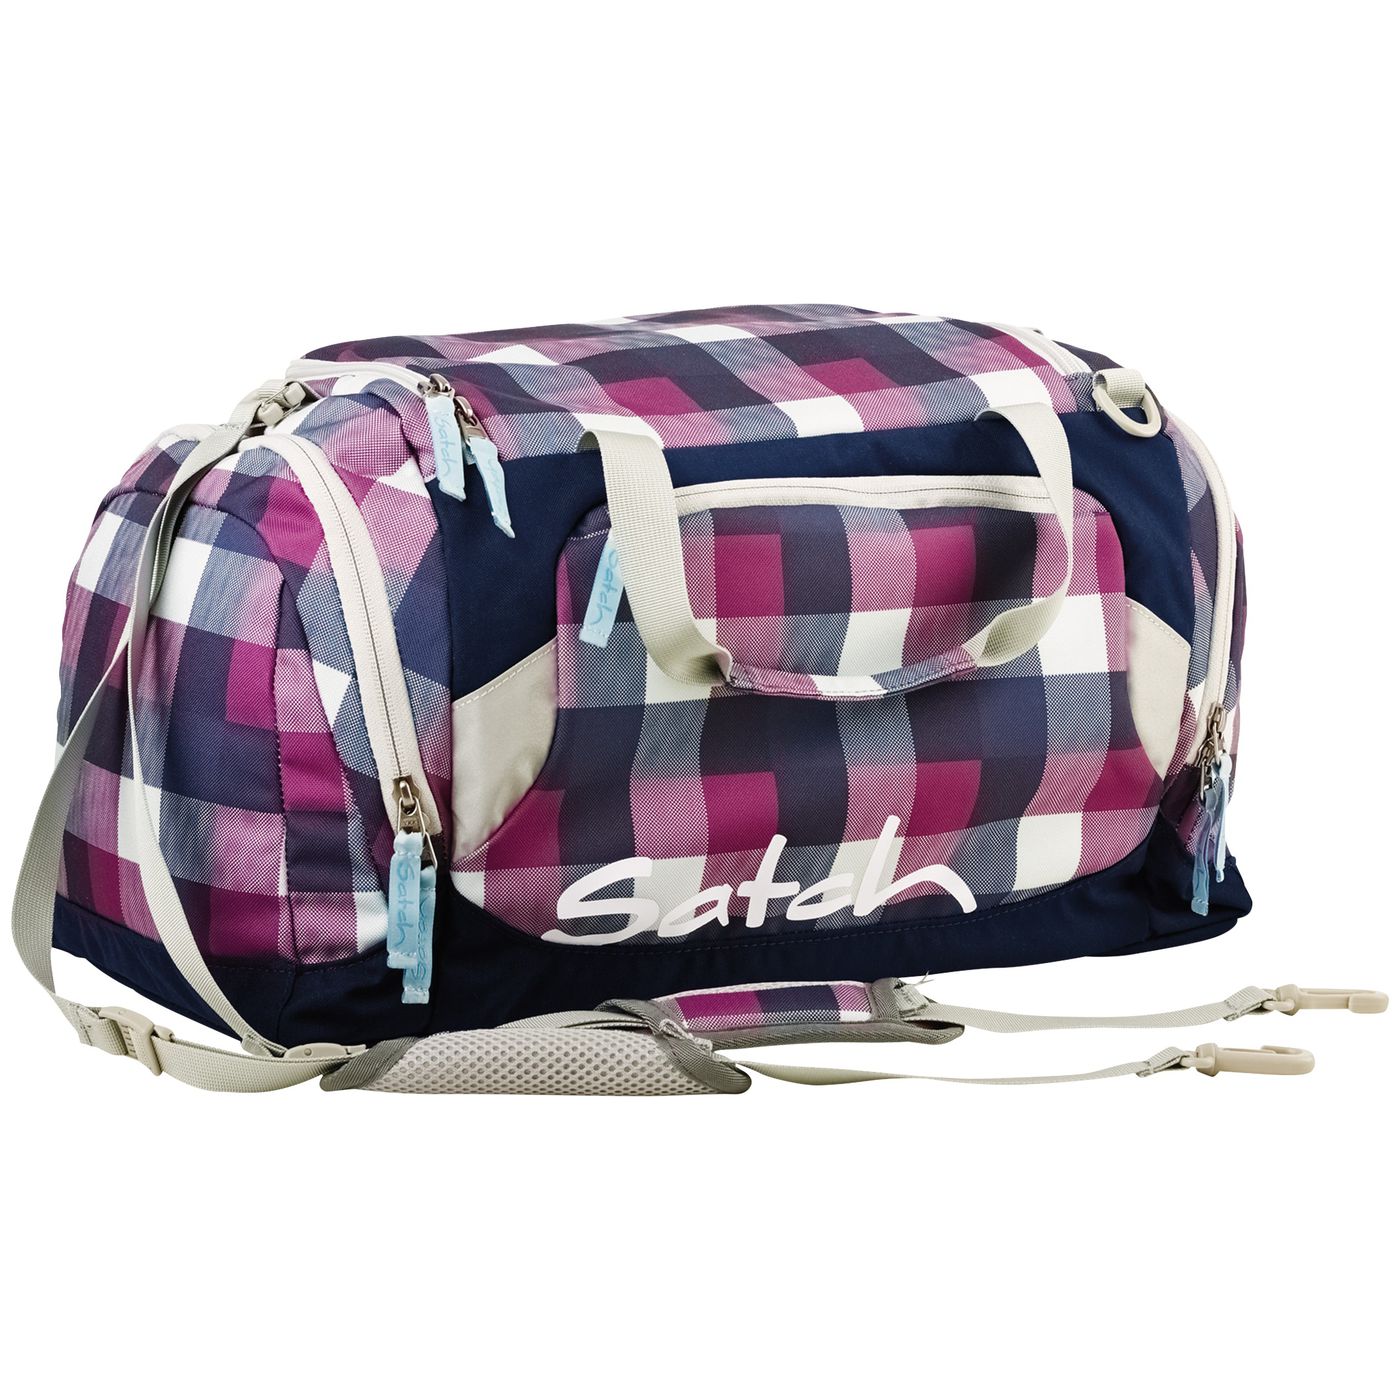 Satch спортивная сумка с ручками для переноски